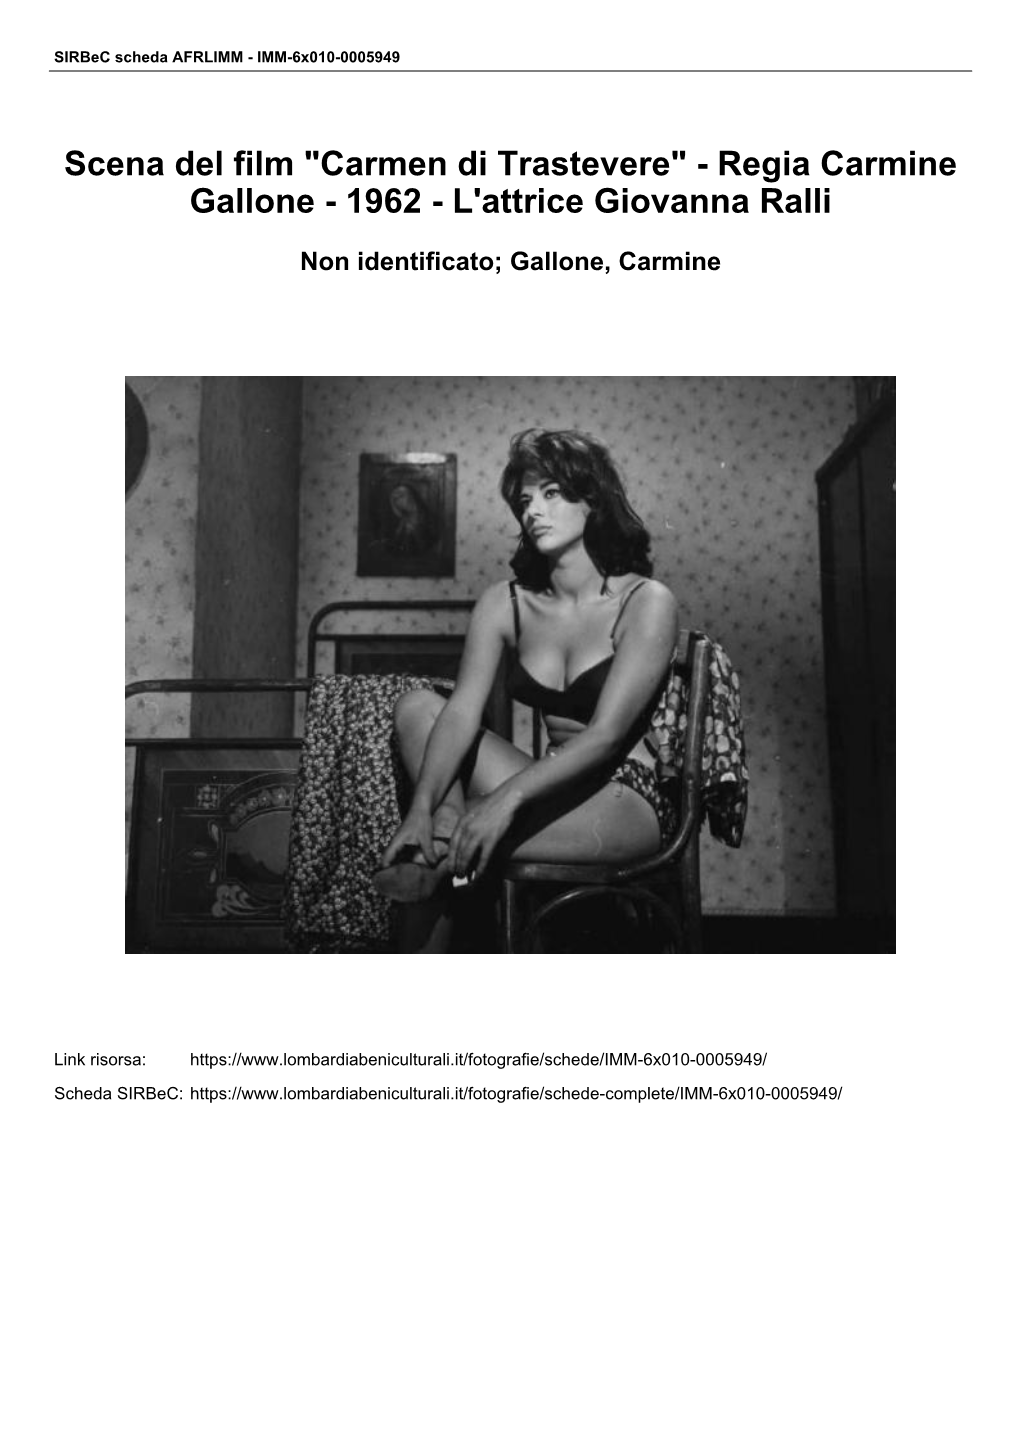 Scena Del Film "Carmen Di Trastevere" - Regia Carmine Gallone - 1962 - L'attrice Giovanna Ralli